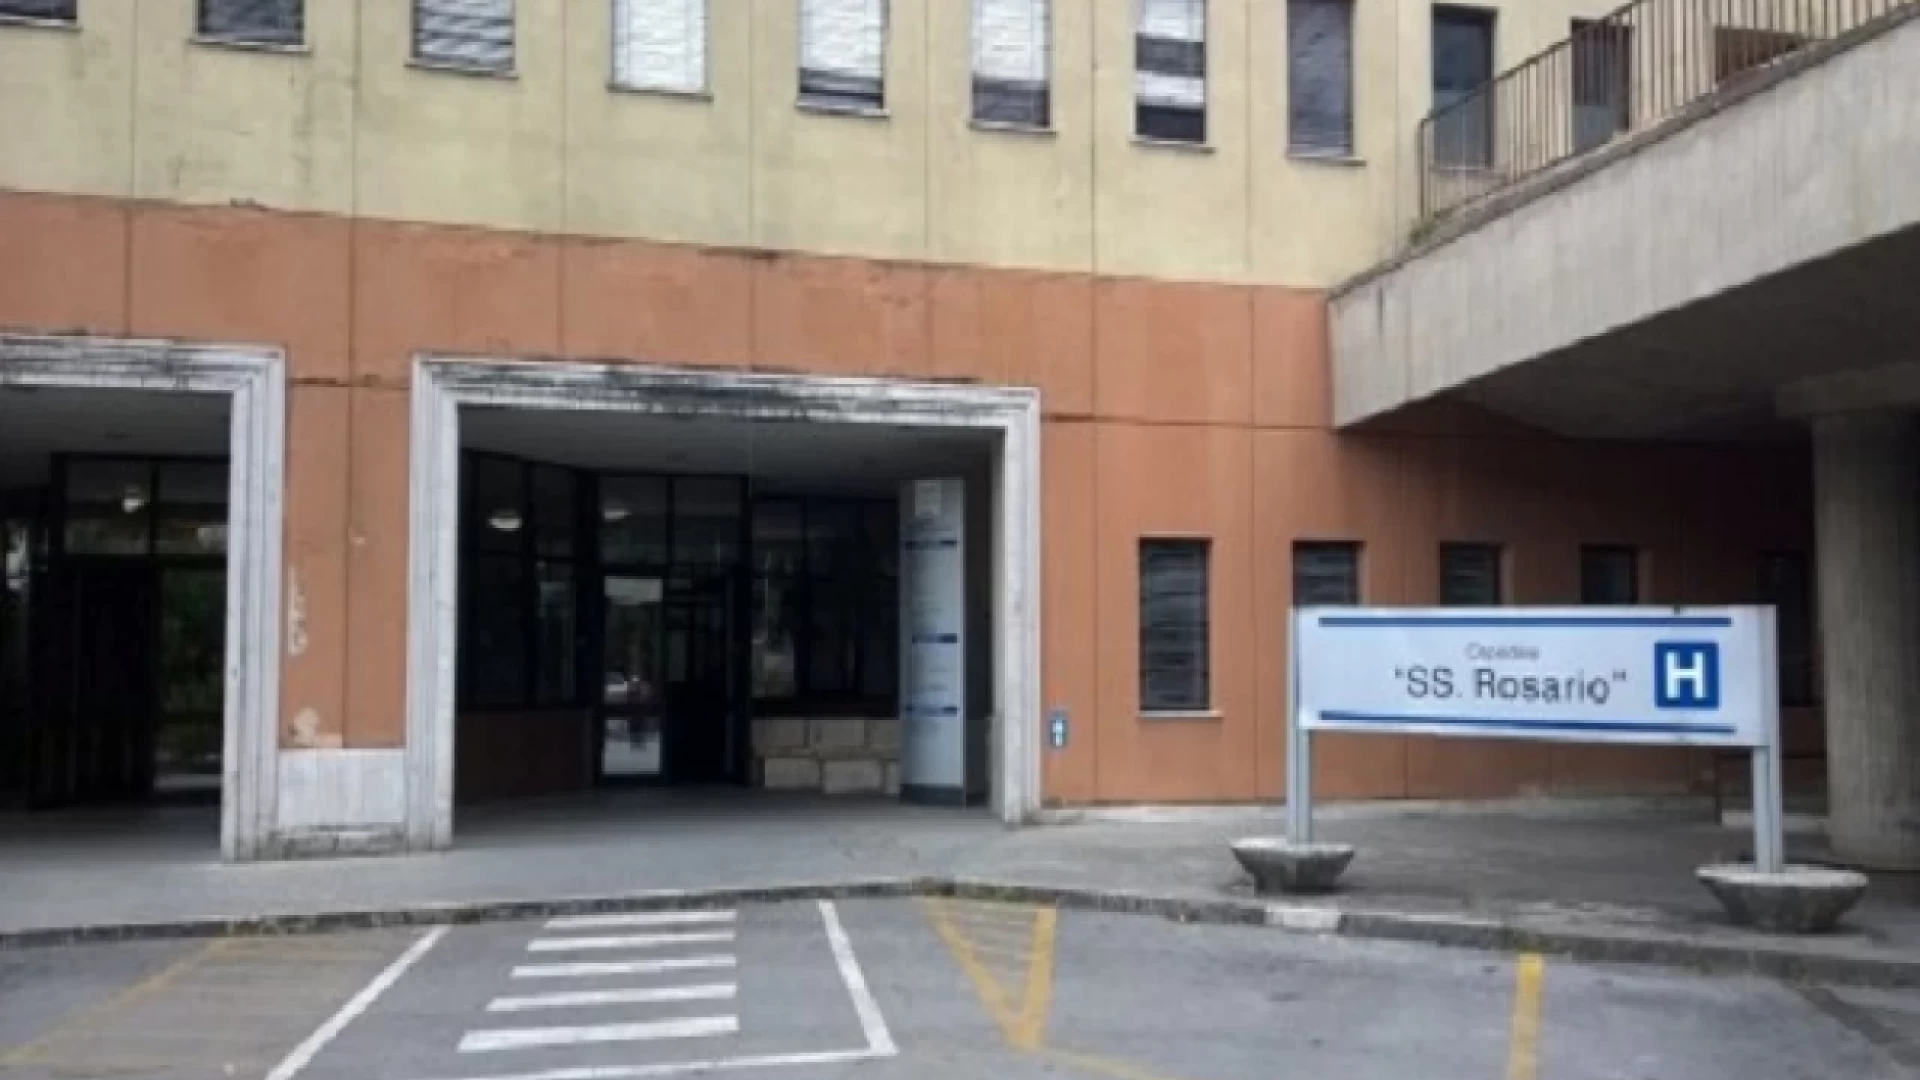 Esami radiologici a Venafro: nuovi orari a disposizione presso la Casa della Salute.